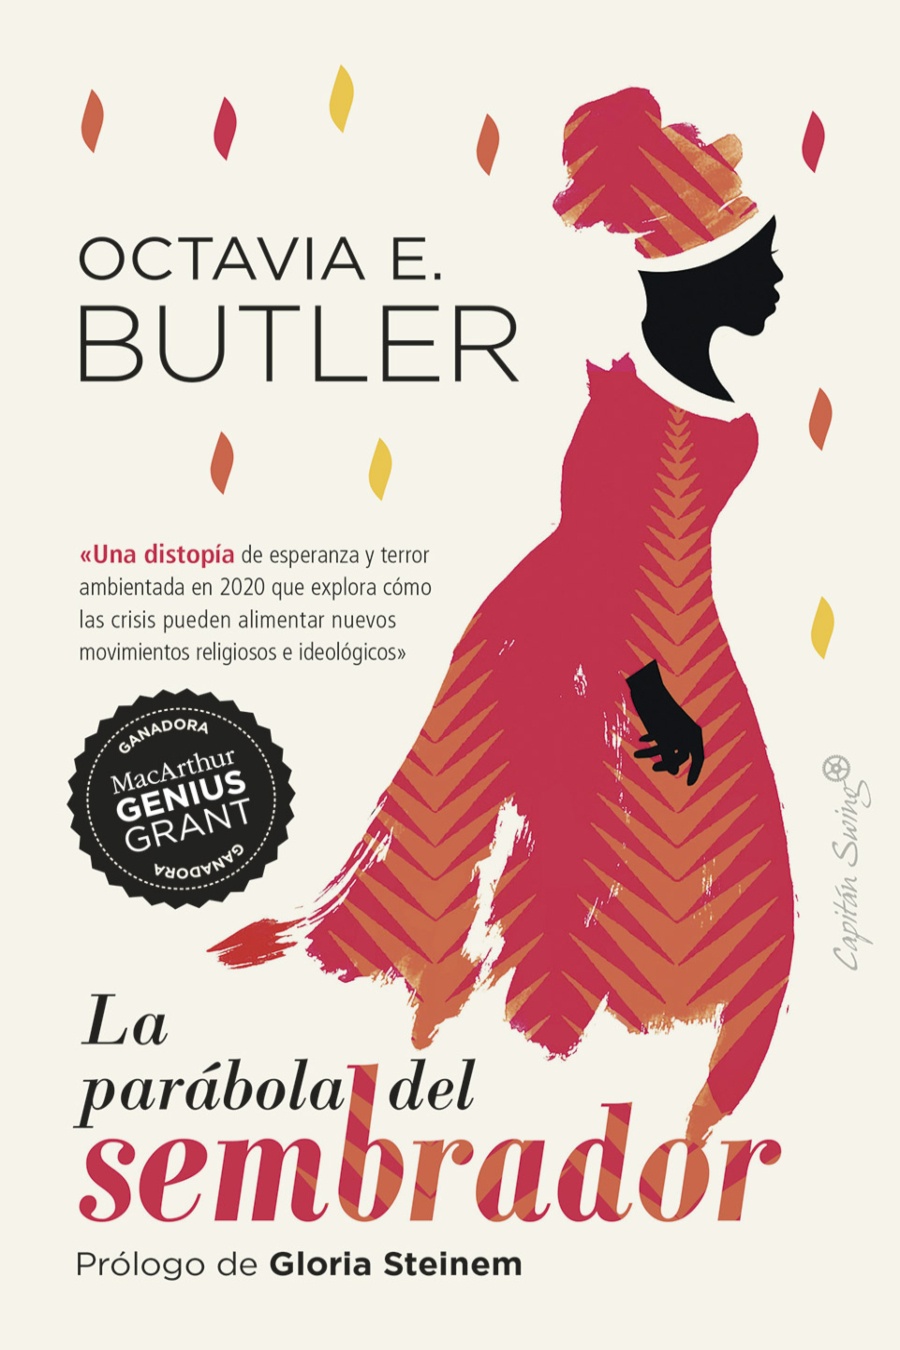 La parábola del sembrador. Octavia E. Butler.